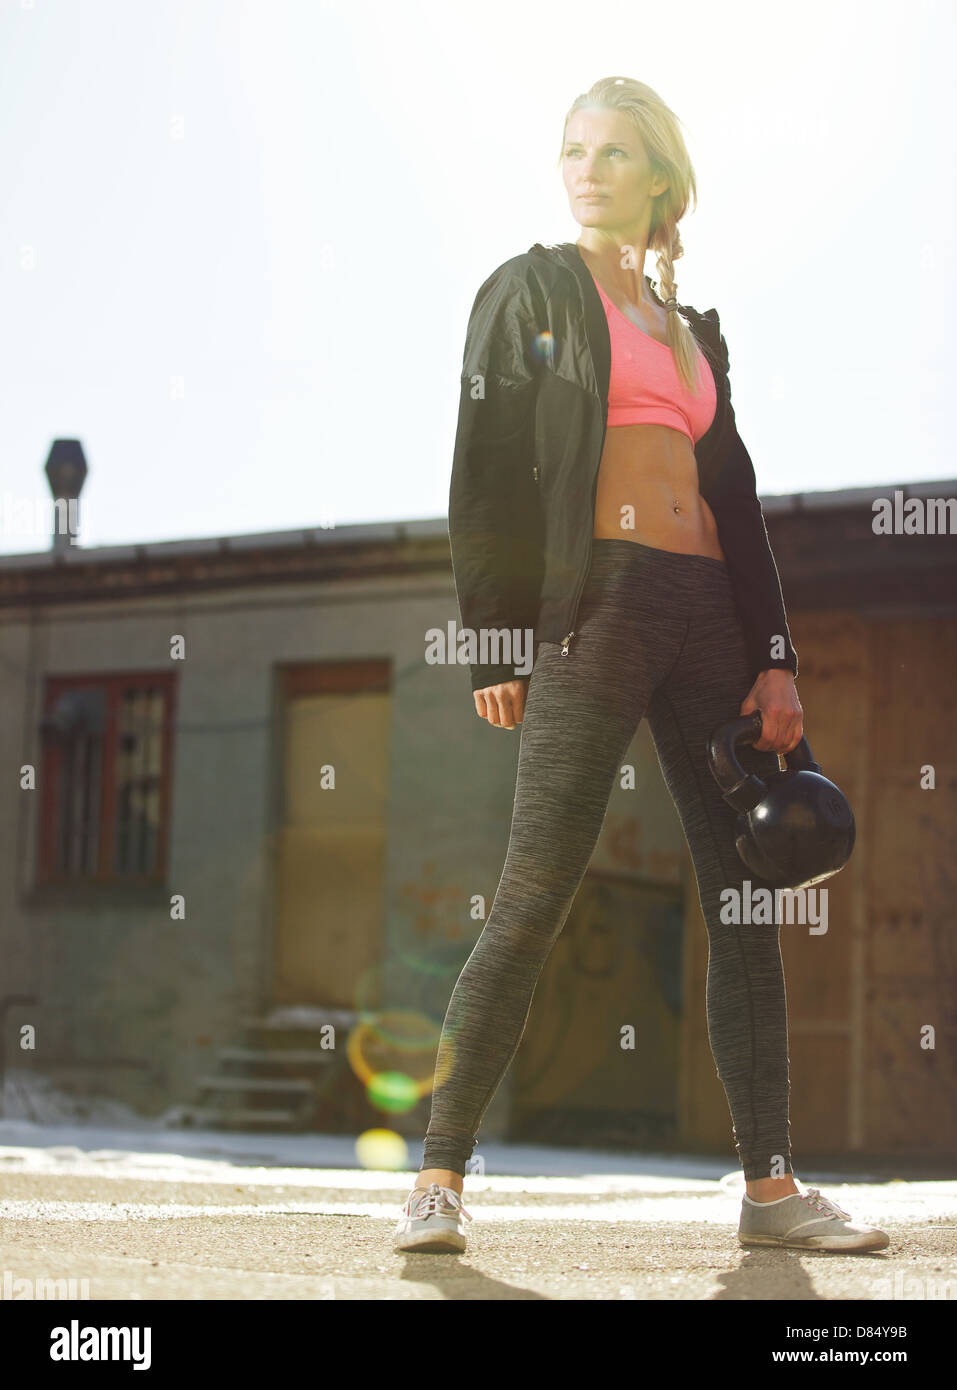 Dans les vêtements de sport femme crossfit attrayant tenant une kettlebell outdoors Banque D'Images